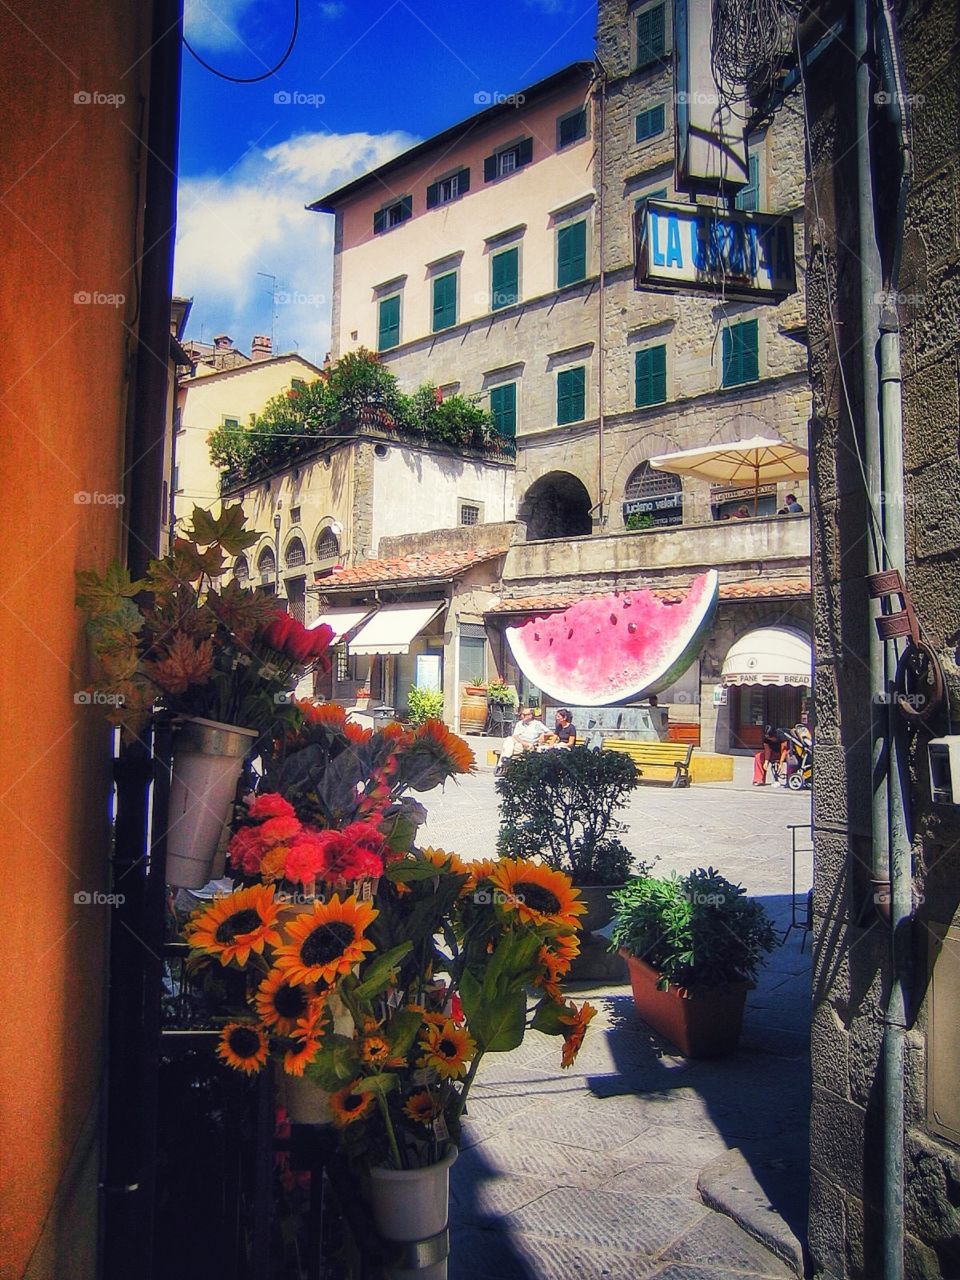 La vita e bella Arezzo